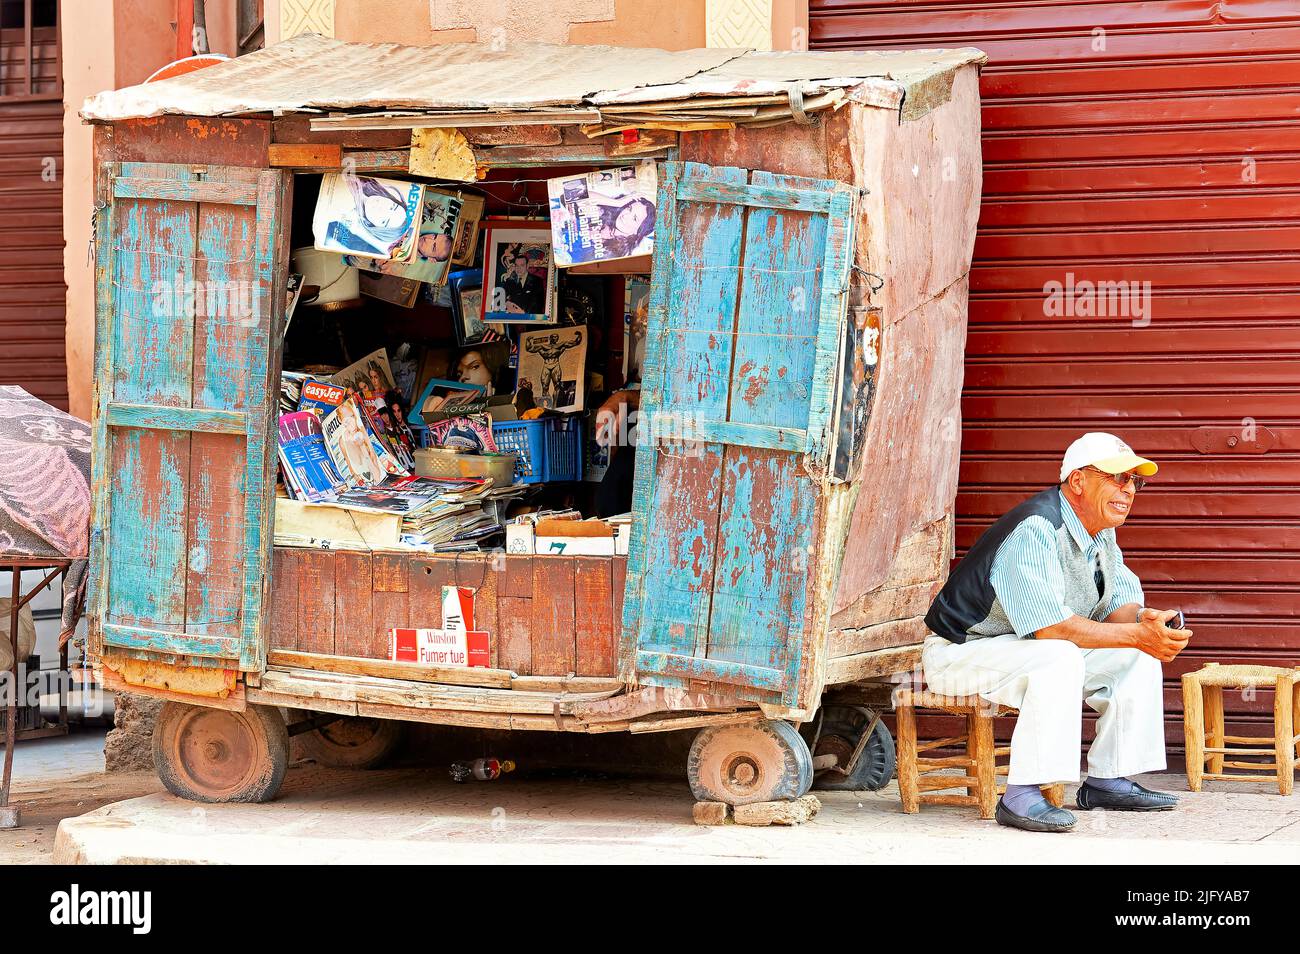 Marruecos Marrakech. Quiosco de noticias en la calle Foto de stock